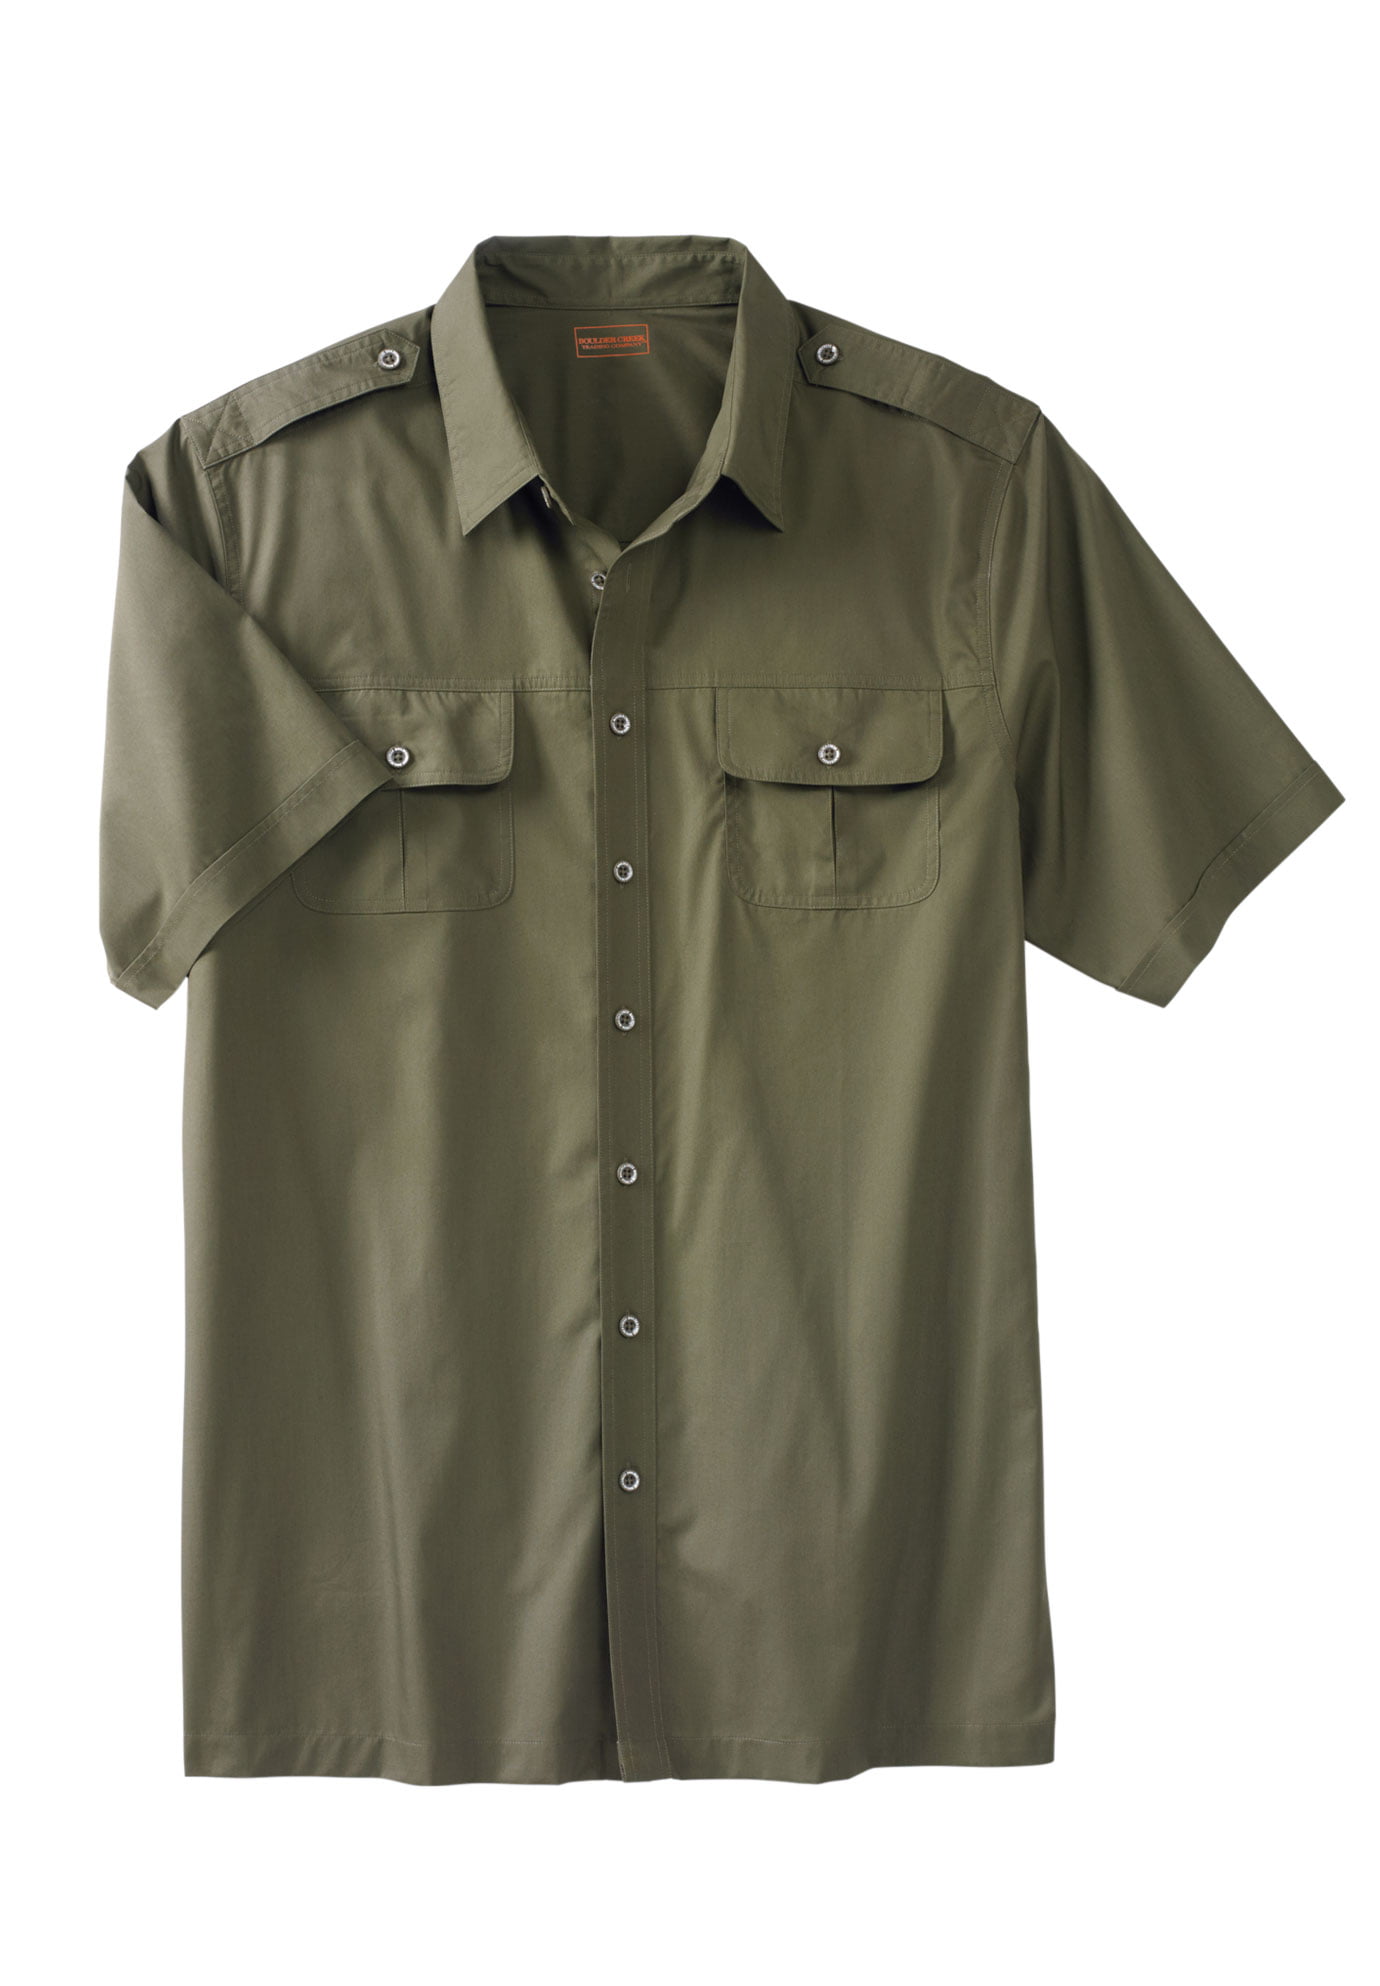 Boulder Creek - Boulder Creek Men's Big & Tall Short Sleeve Pilot Shirt ...